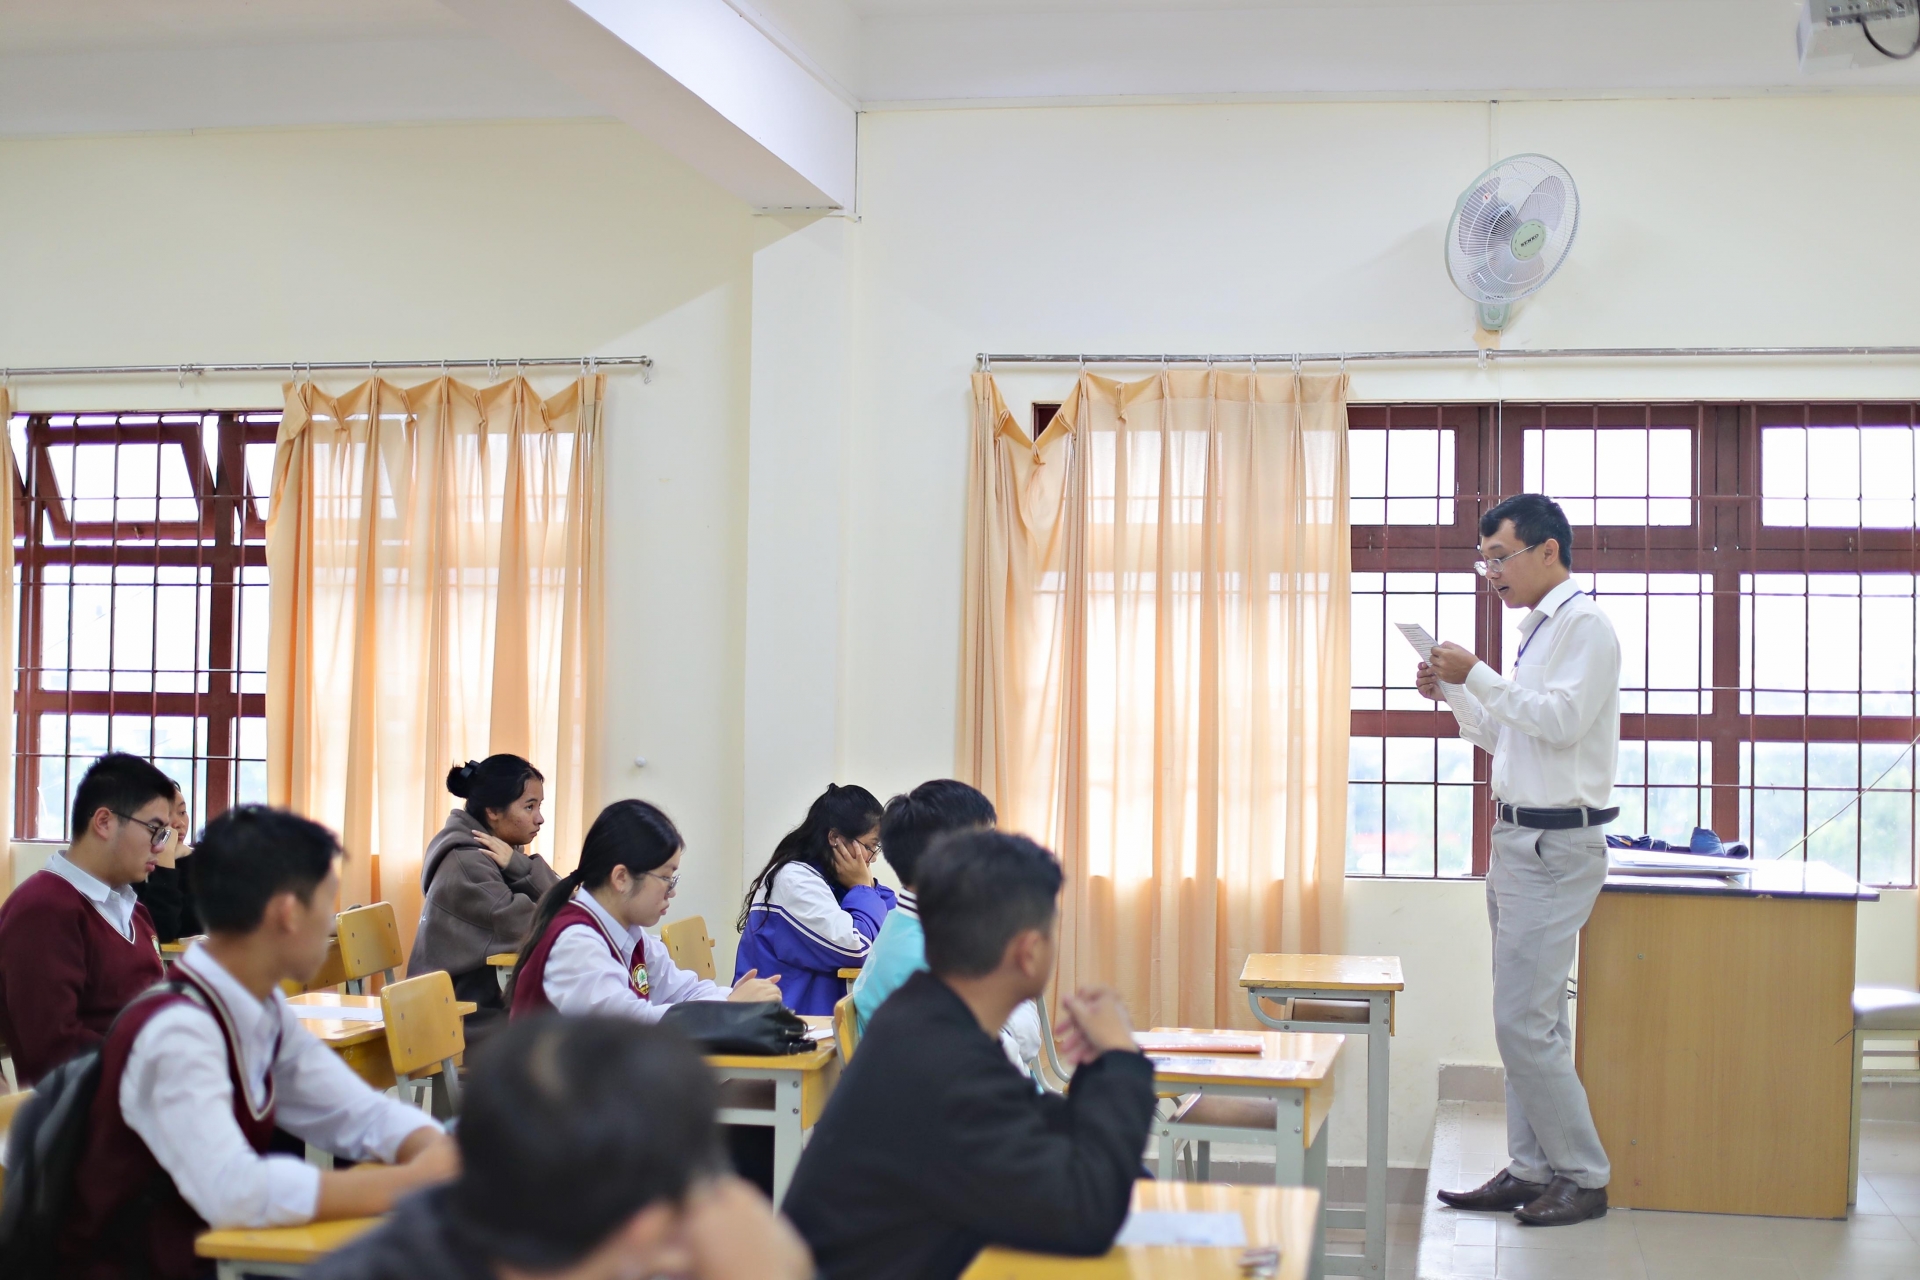 Kỳ thi năm nay tỉnh Lâm Đồng bố trí 39 điểm thi và huy động gần 2.700 nhân sự để phục vụ cho công tác coi thi, chấm thi và các nhiệm vụ liên quan.